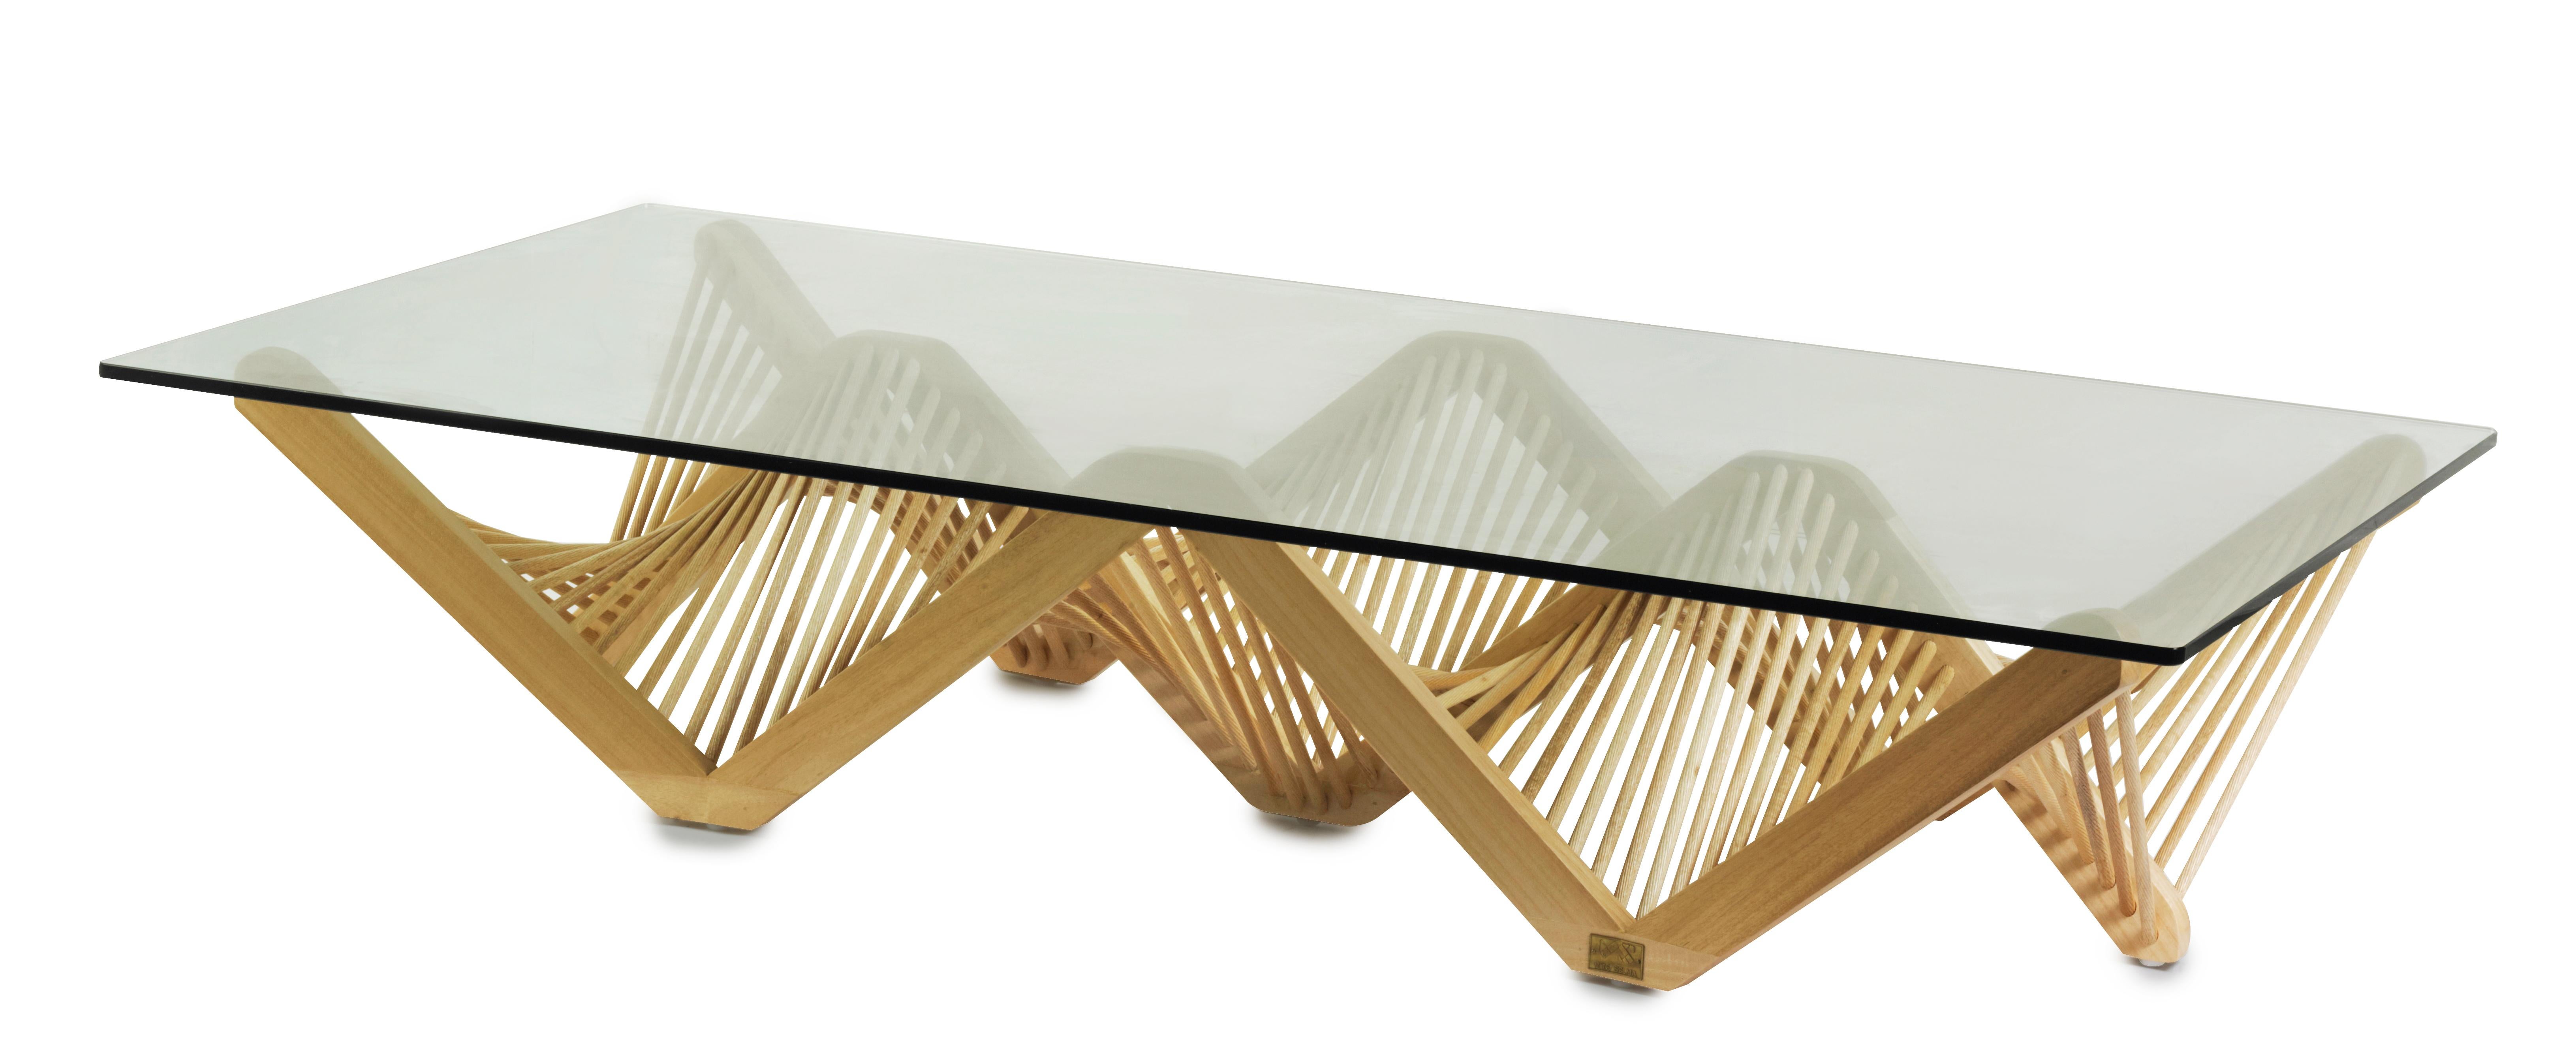 Ce design innovant, conçu par Vito Selma, présente un arrangement captivant de formes géométriques fabriquées en bois de lauan. Le réseau audacieux de formes interconnectées ajoute un élément d'intrigue à l'ensemble du design. Avec sa construction